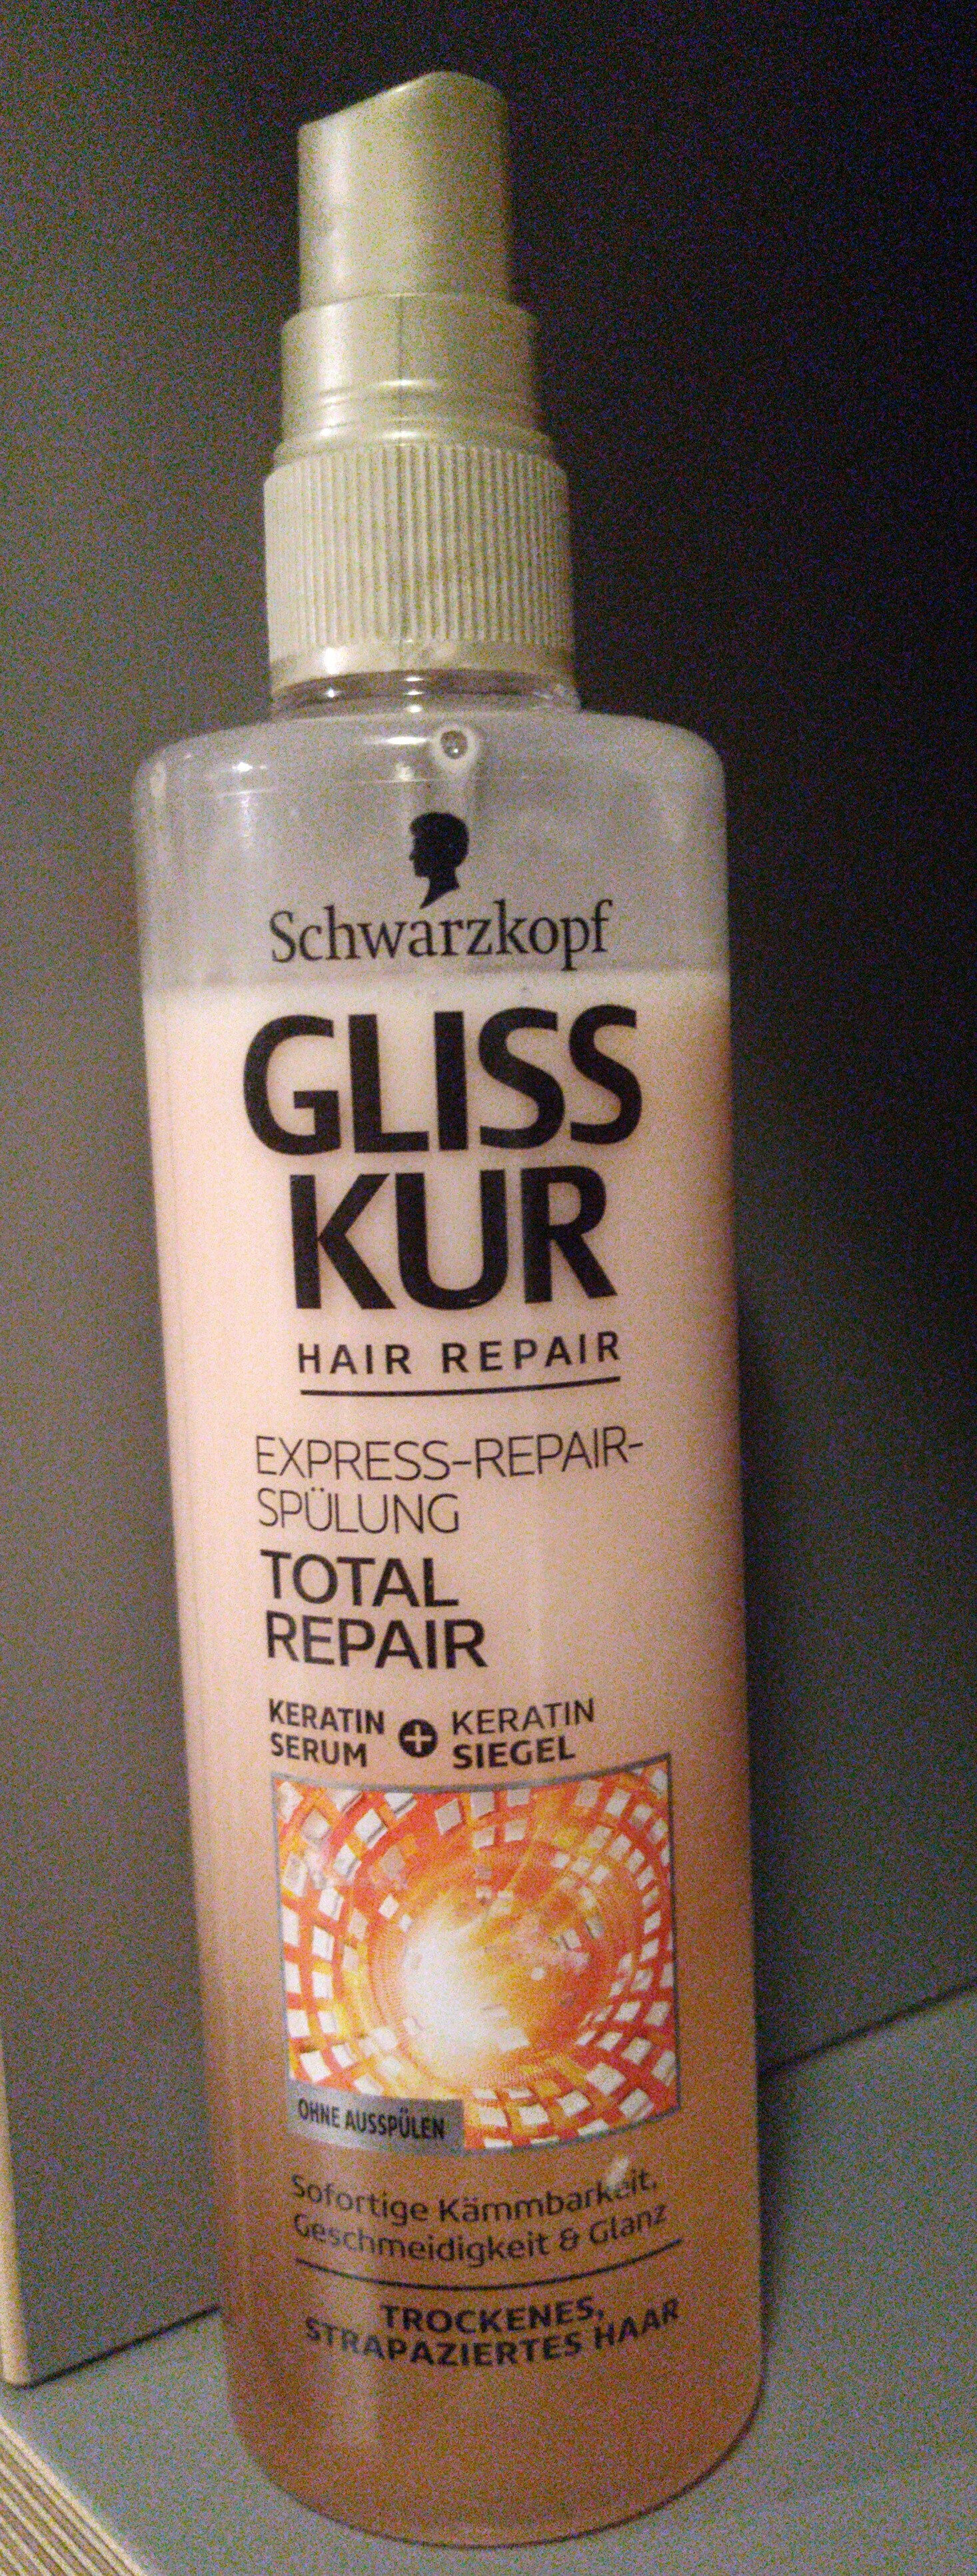 GLISS KUR Total Repair - Produit - en